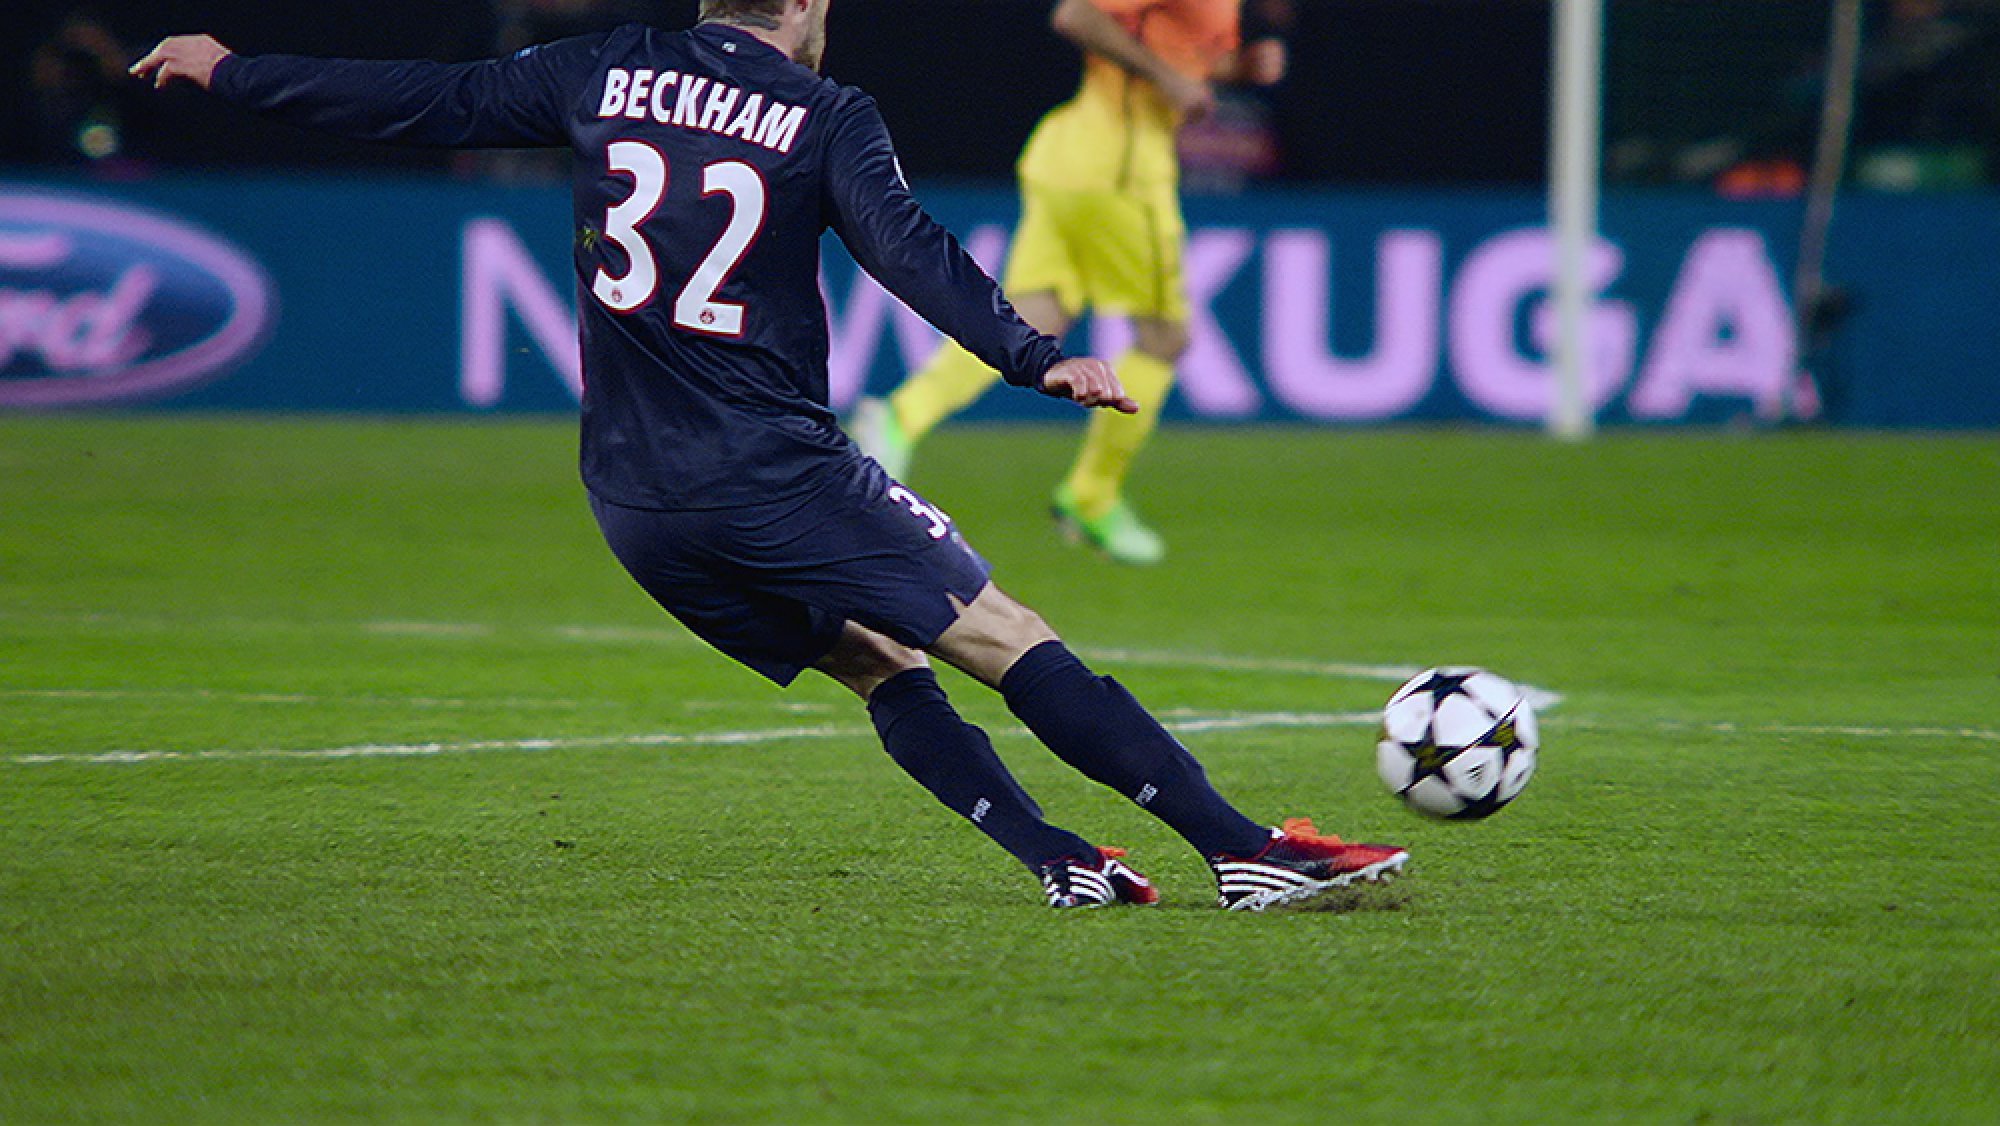 A man in the "Beckham" football shirt kicks a ball.